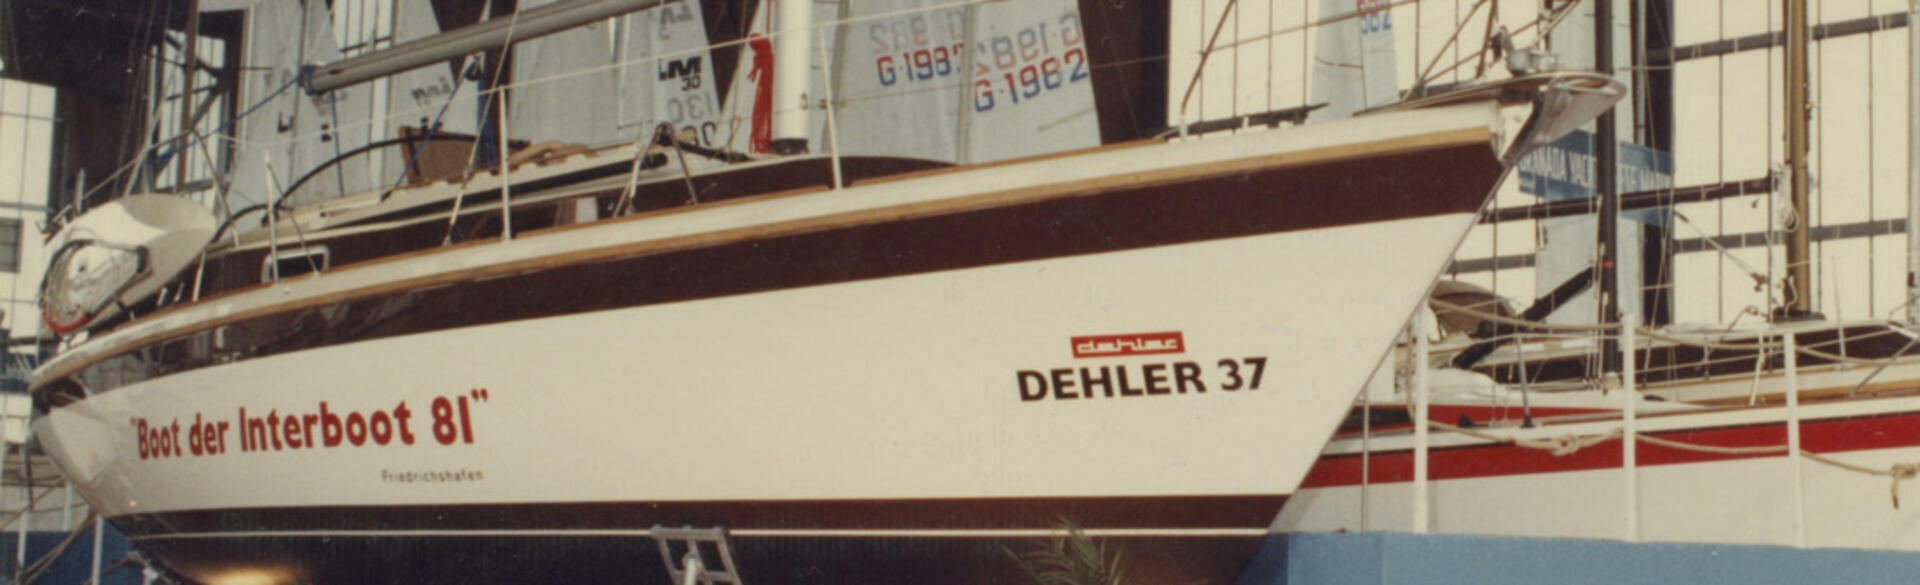 Dehler37-1981.jpg | Dehler